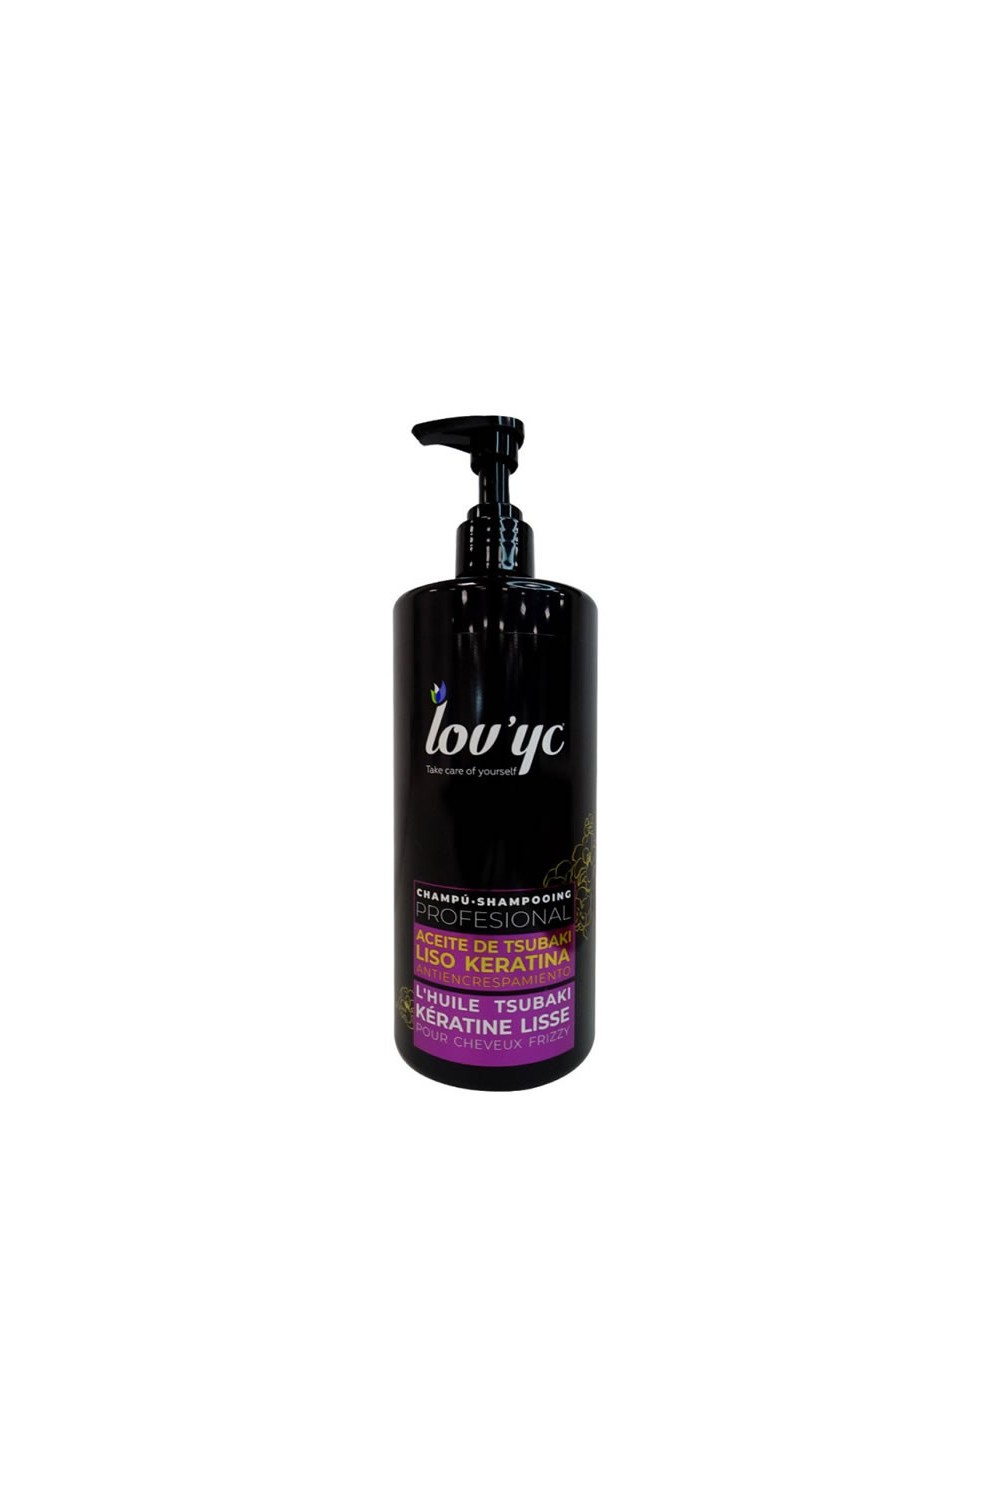 Lovyc Keratin Shampoo 750ml